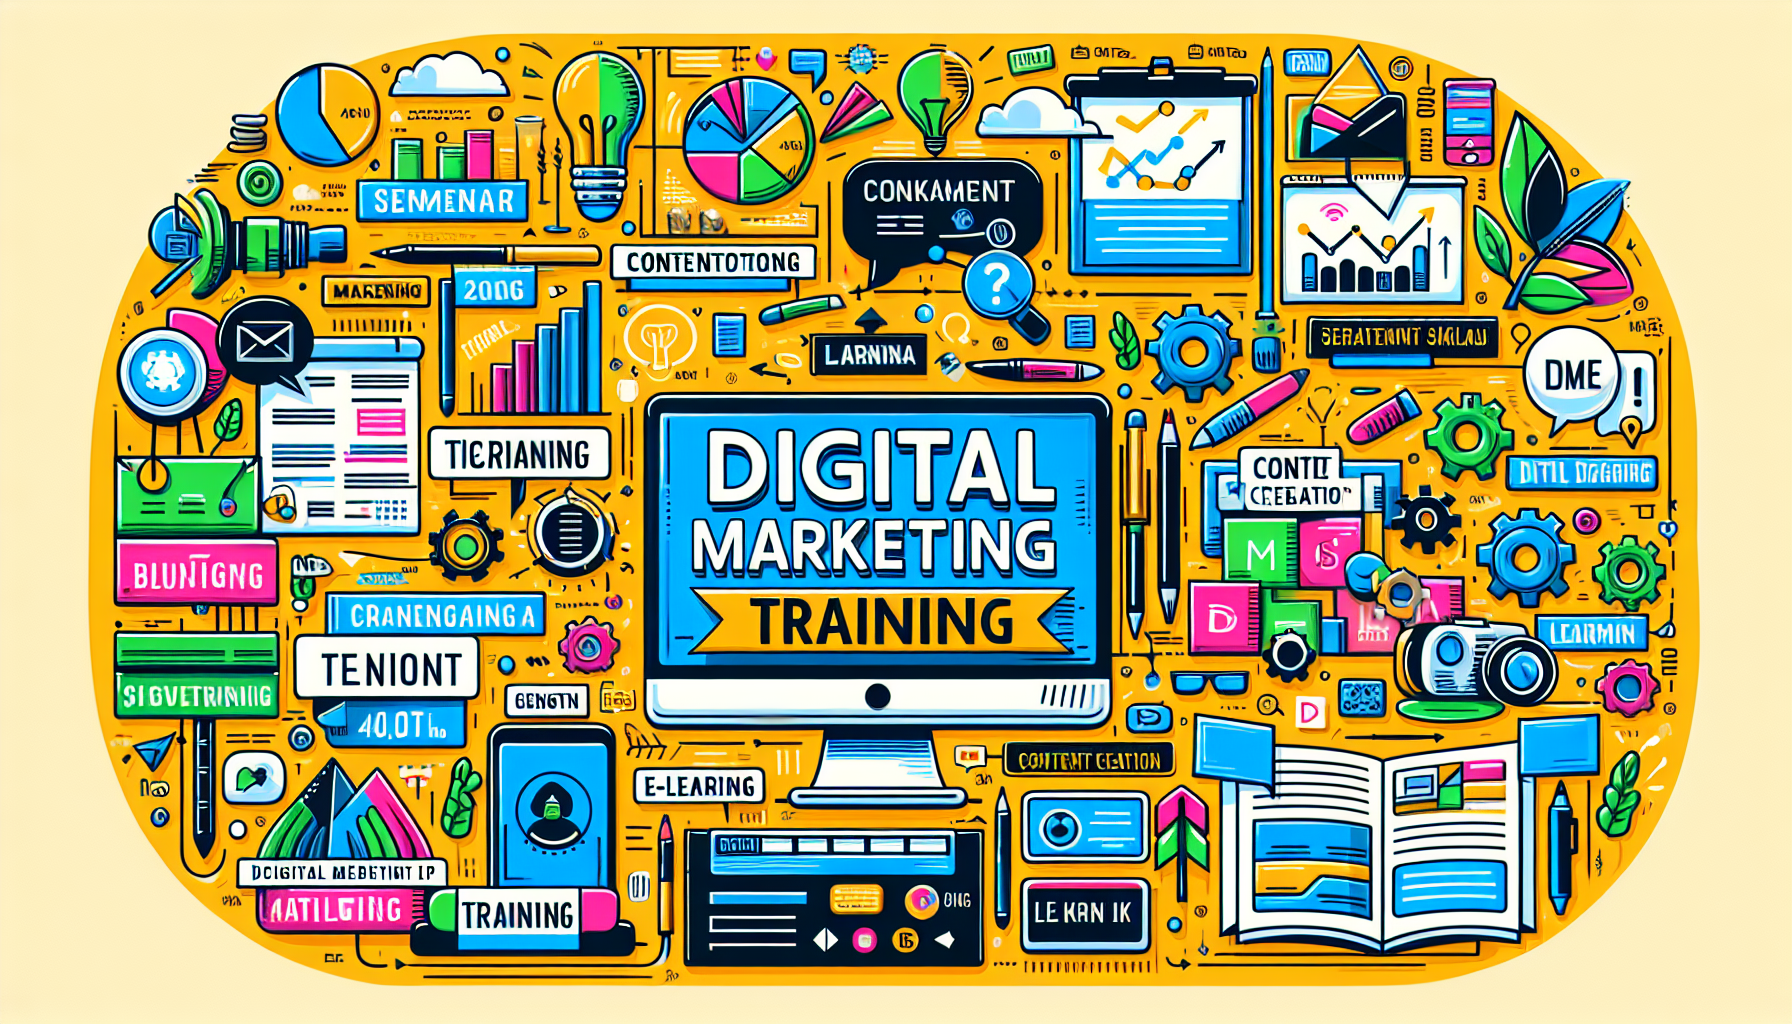 découvrez comment créer des contenus efficaces pour le marketing digital avec notre formation en marketing digital.